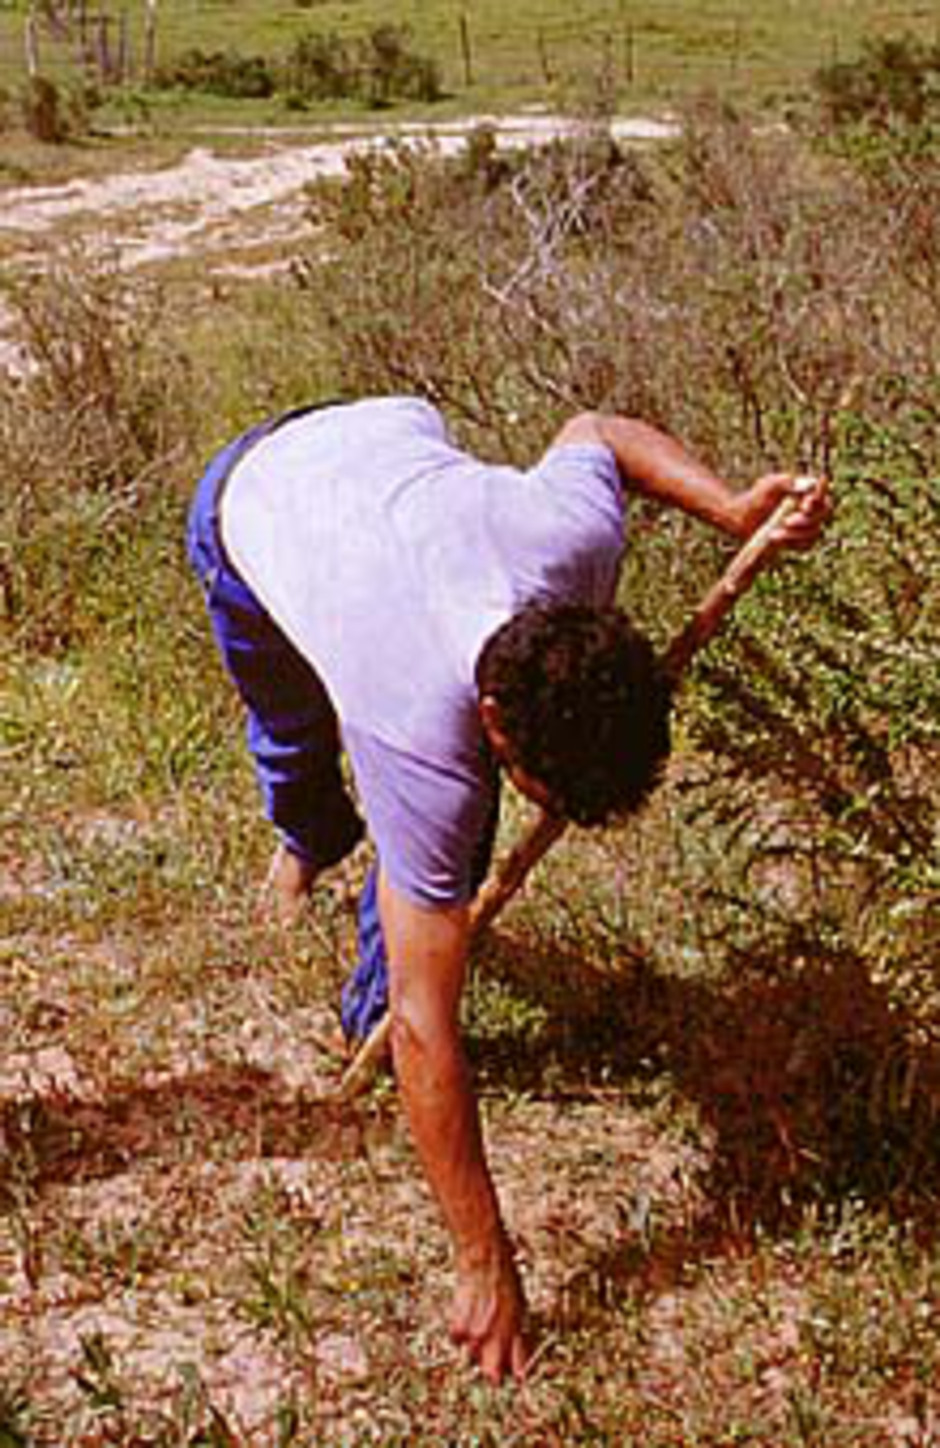 En skogvaktare letar efter ökentryffel i Maamora, en gles korkeksskog strax öster om Rabat, Marockos huvudstad. Han slår med sin käpp i den mjuka sanden tills käppen träffar ett hårt föremål. Då känner han på sanden med fingrarna och gräver fram en fruktkropp av Terfezia.